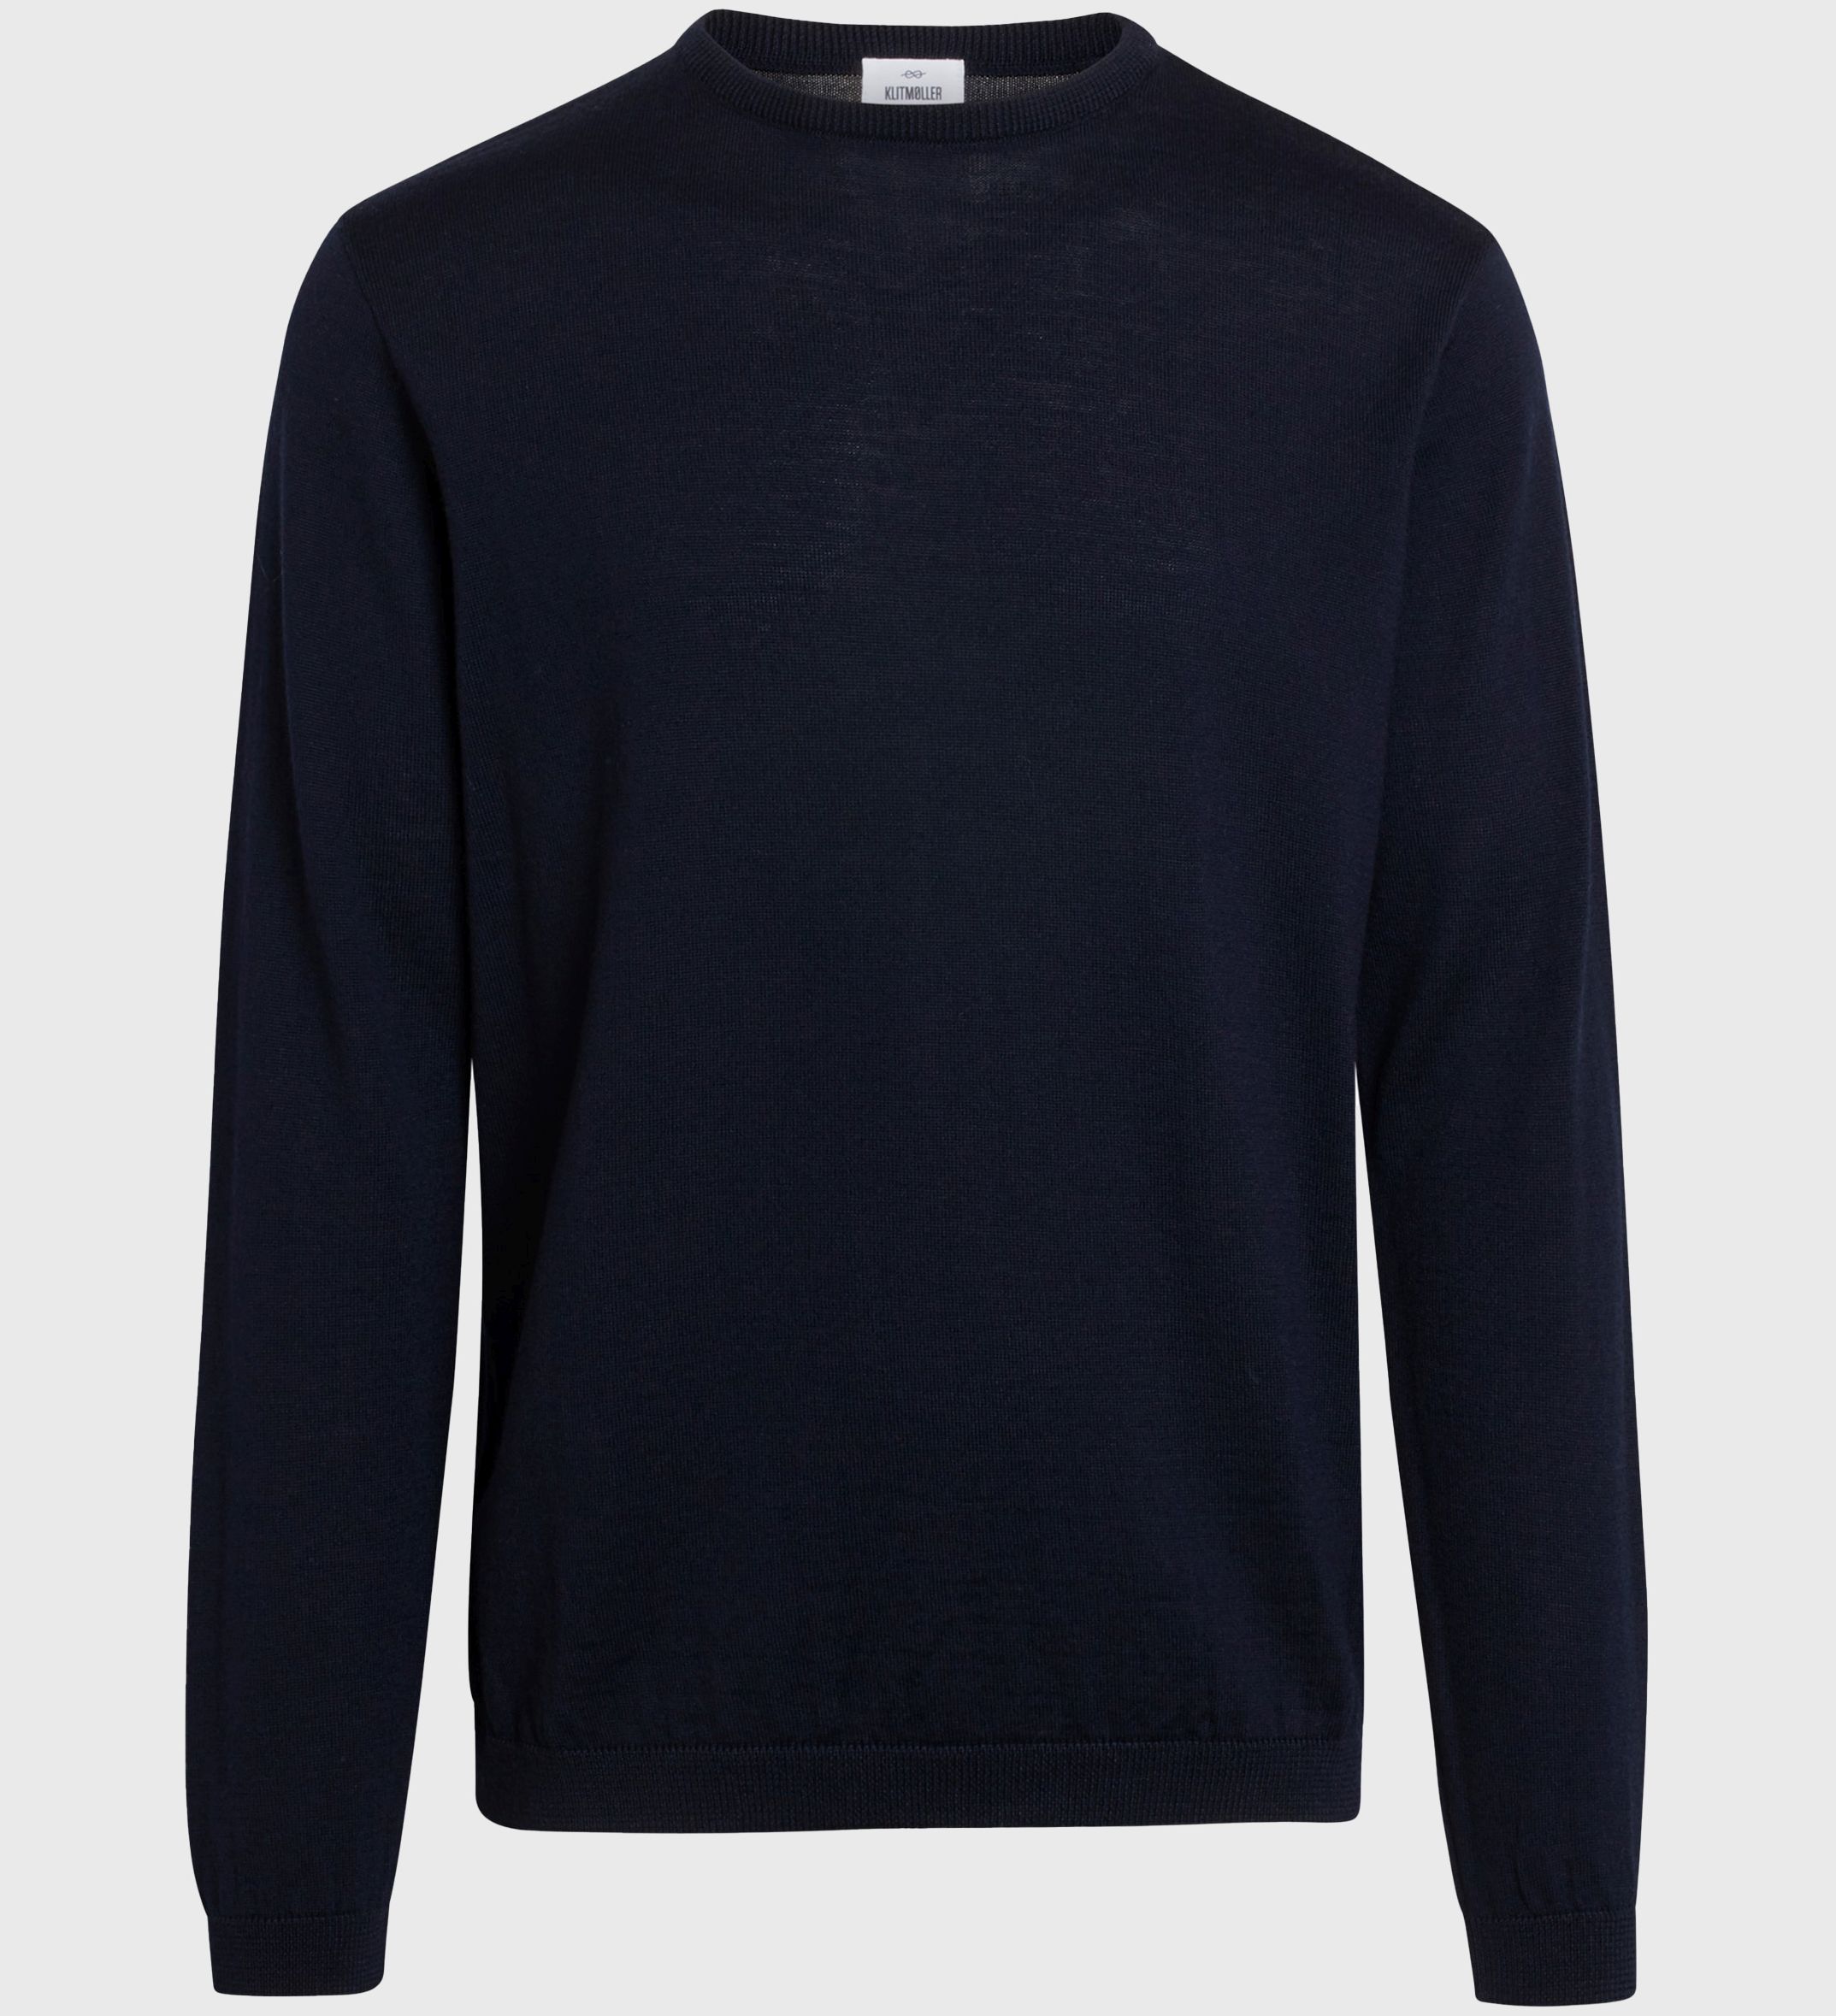 Herren-Strickpullover Mens basic merino knit Navy (100% Wolle) 